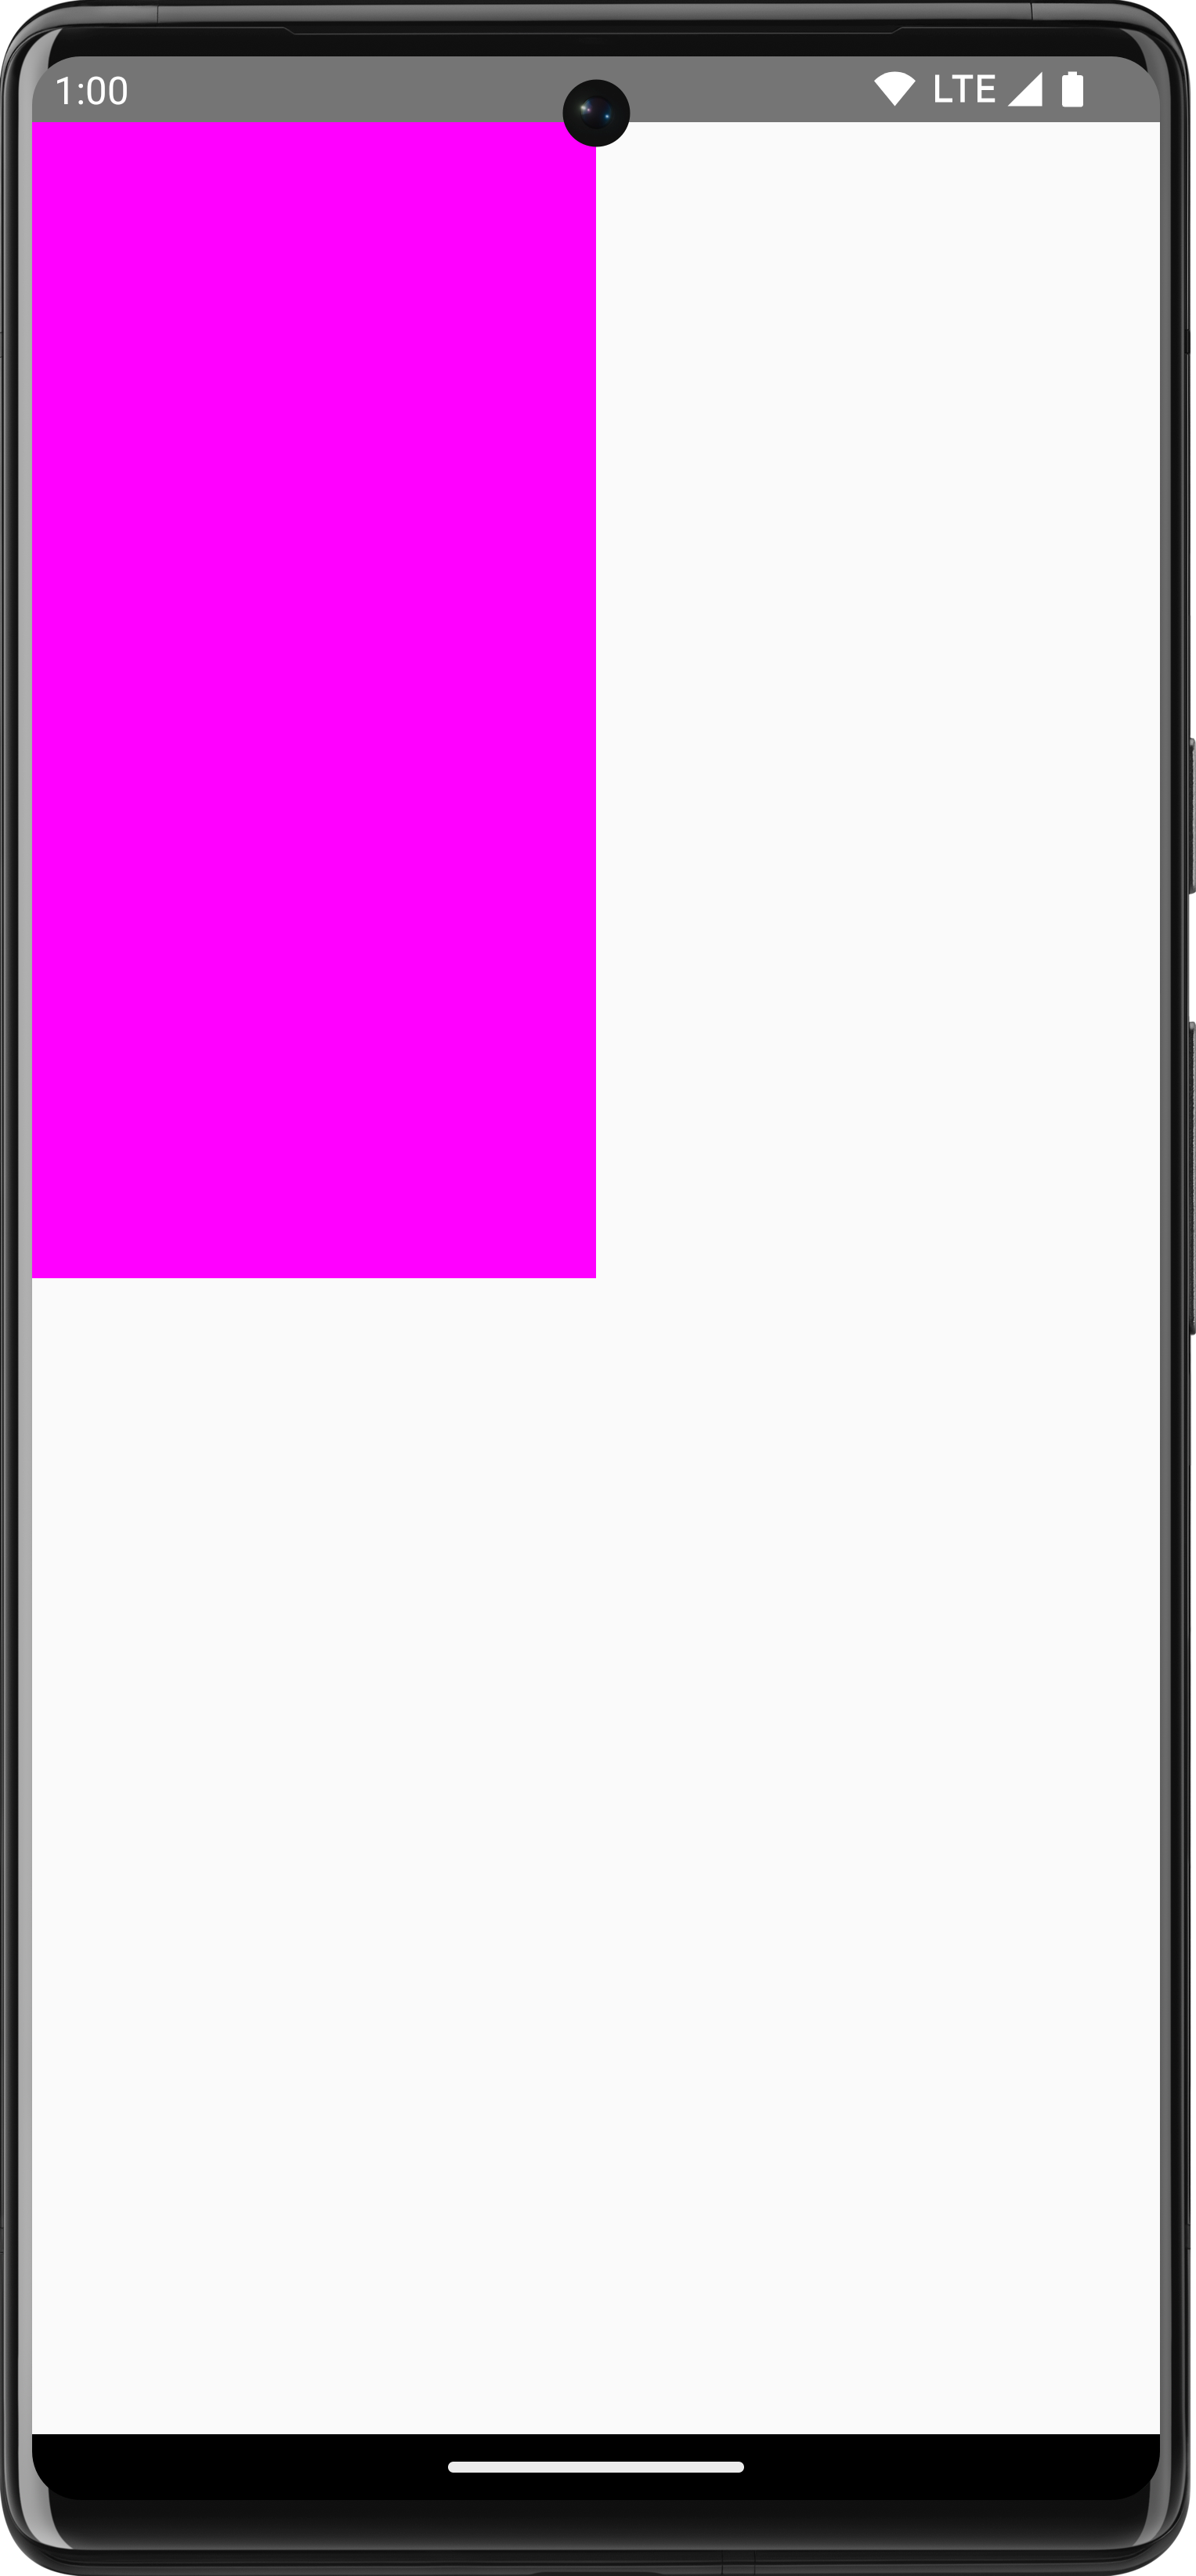 На белом фоне нарисован розовый прямоугольник, занимающий четверть экрана.